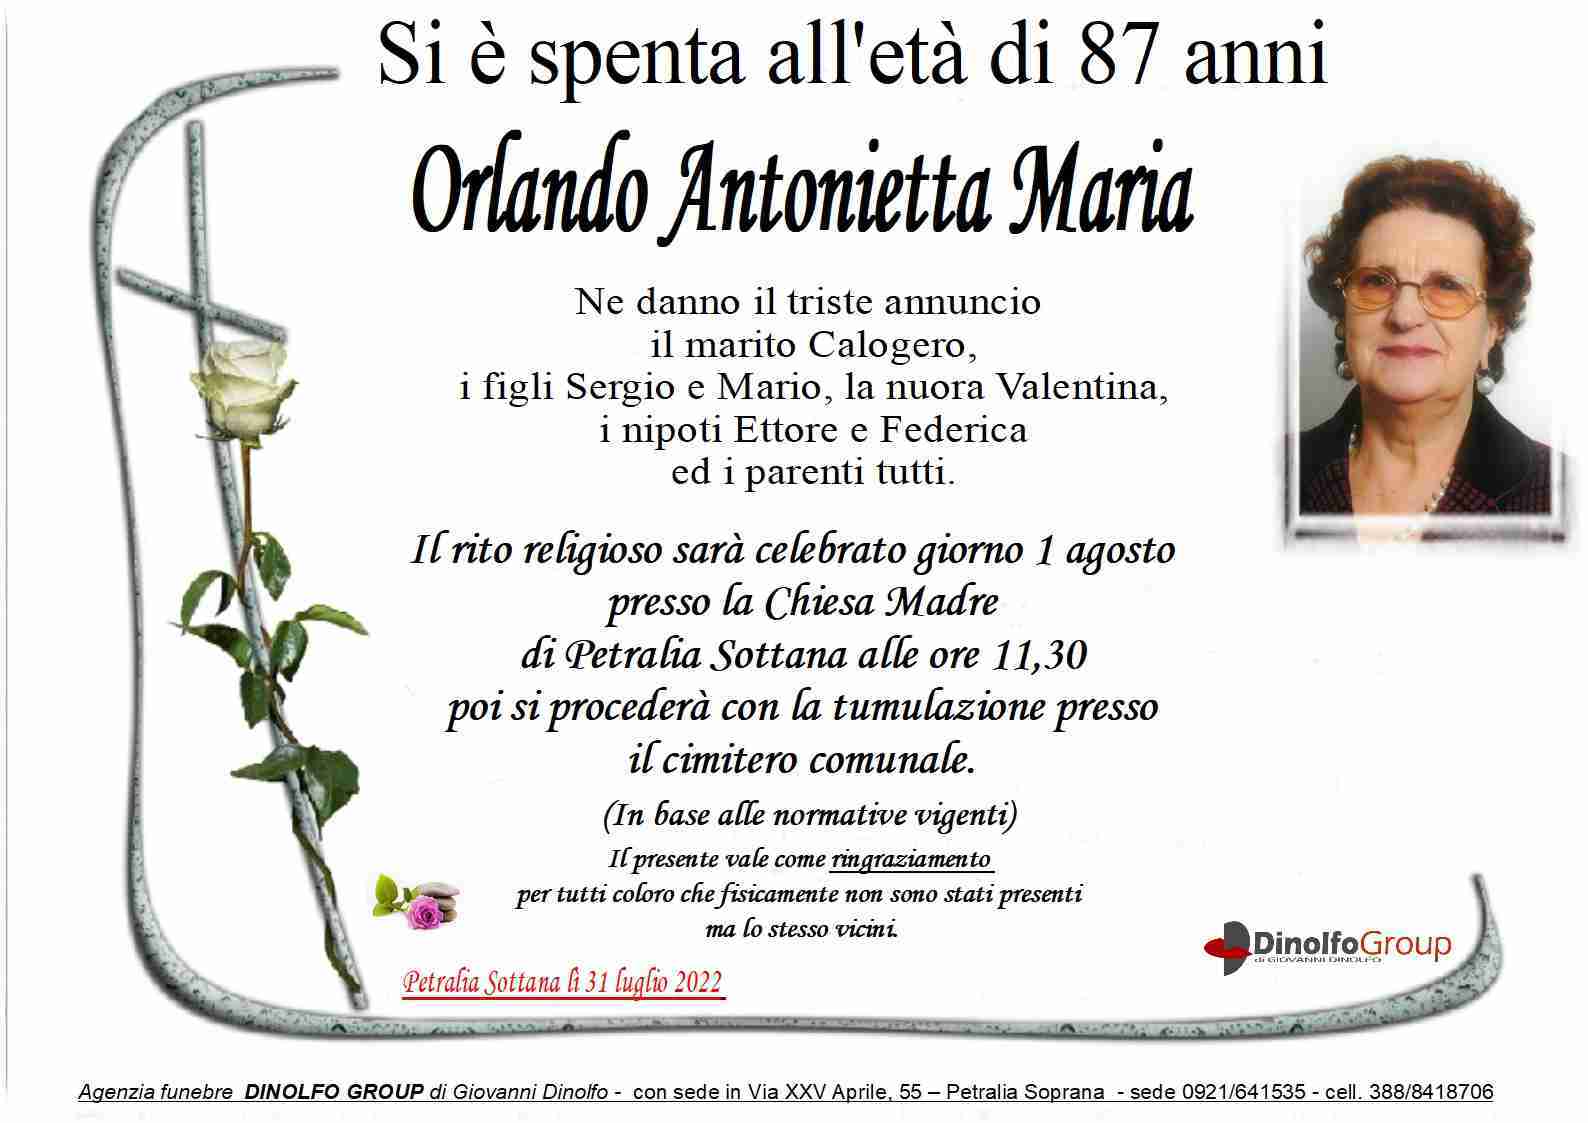 Antonietta Maria Orlando